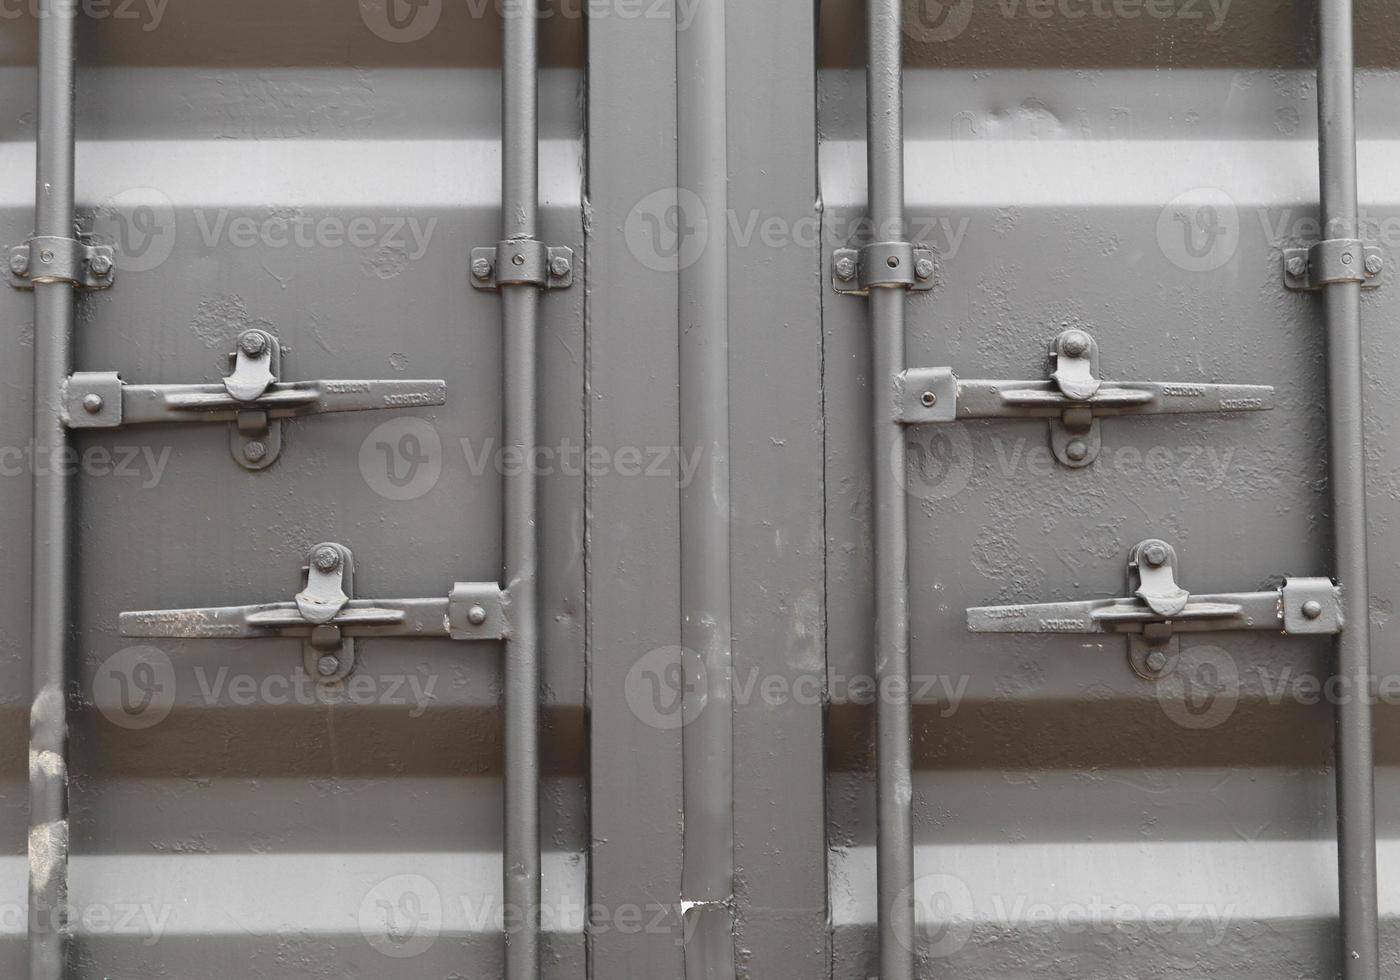 contenedor de carga estándar en negro mate y tiene una llave para cerrar la puerta trasera de forma segura para evitar pérdidas y ladrones. foto